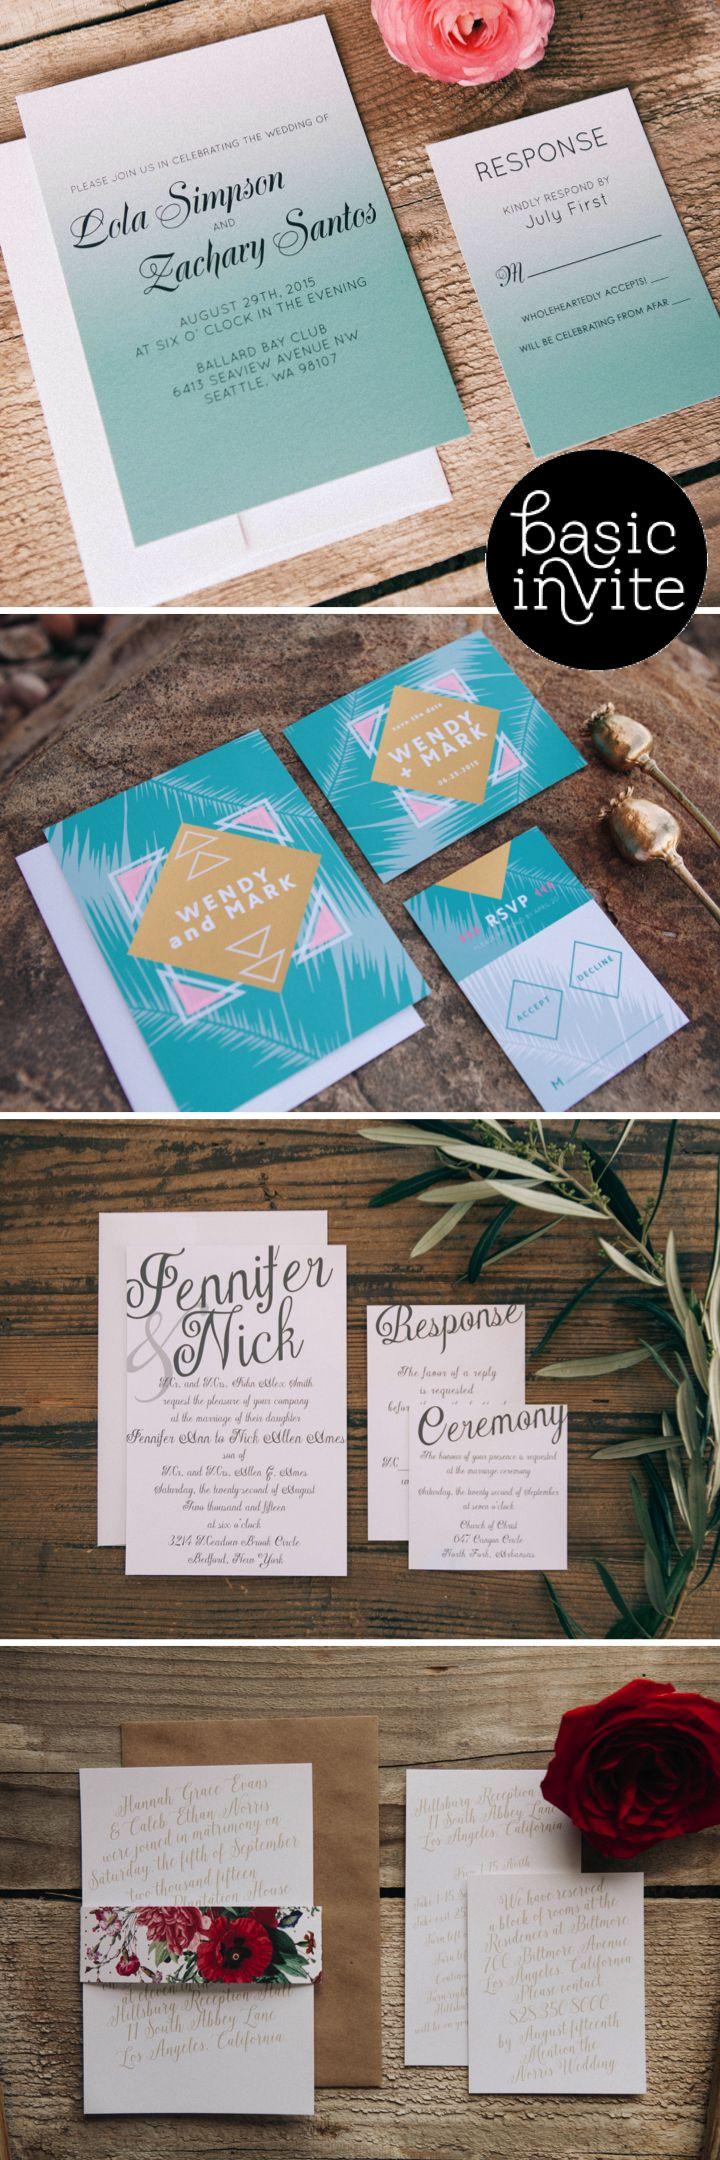 Mariage - Basic Invite - Stylish Stationery For Weddings!